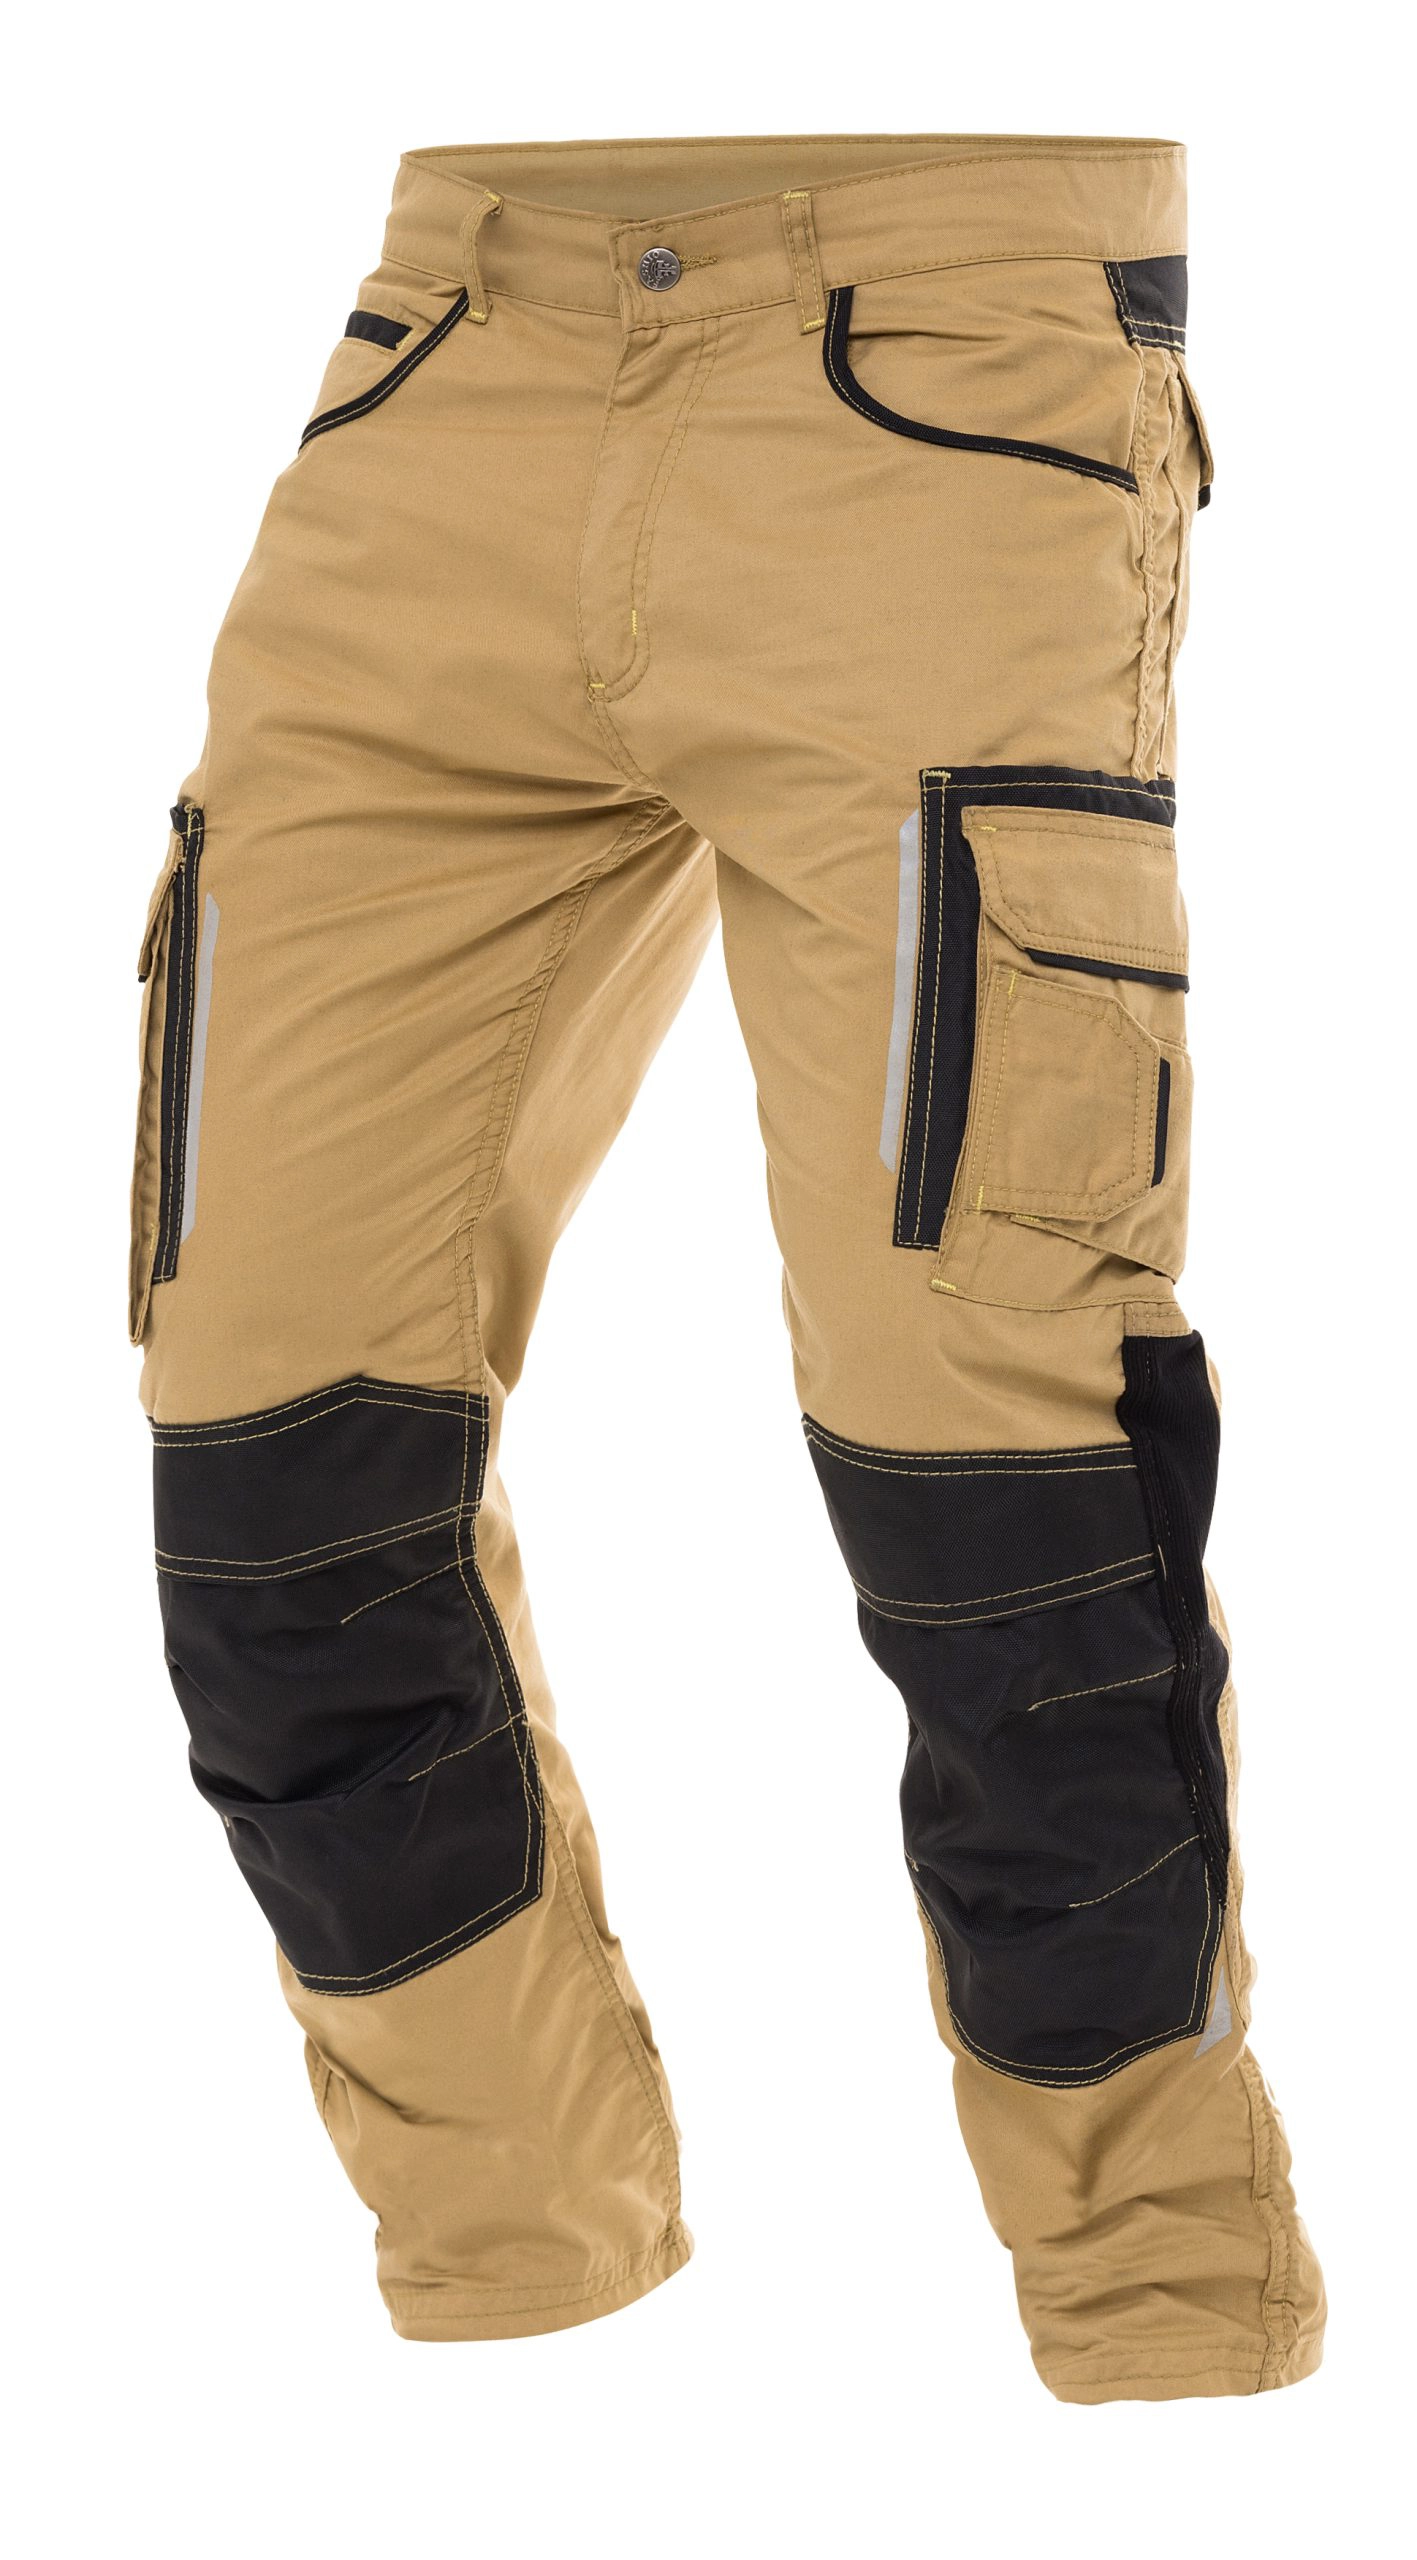 Mens Construction Pants Men Utility Work Pants Heavy Duty Reinforcement Workwear Trousers Carpenter Pants Safety Cordura Pants